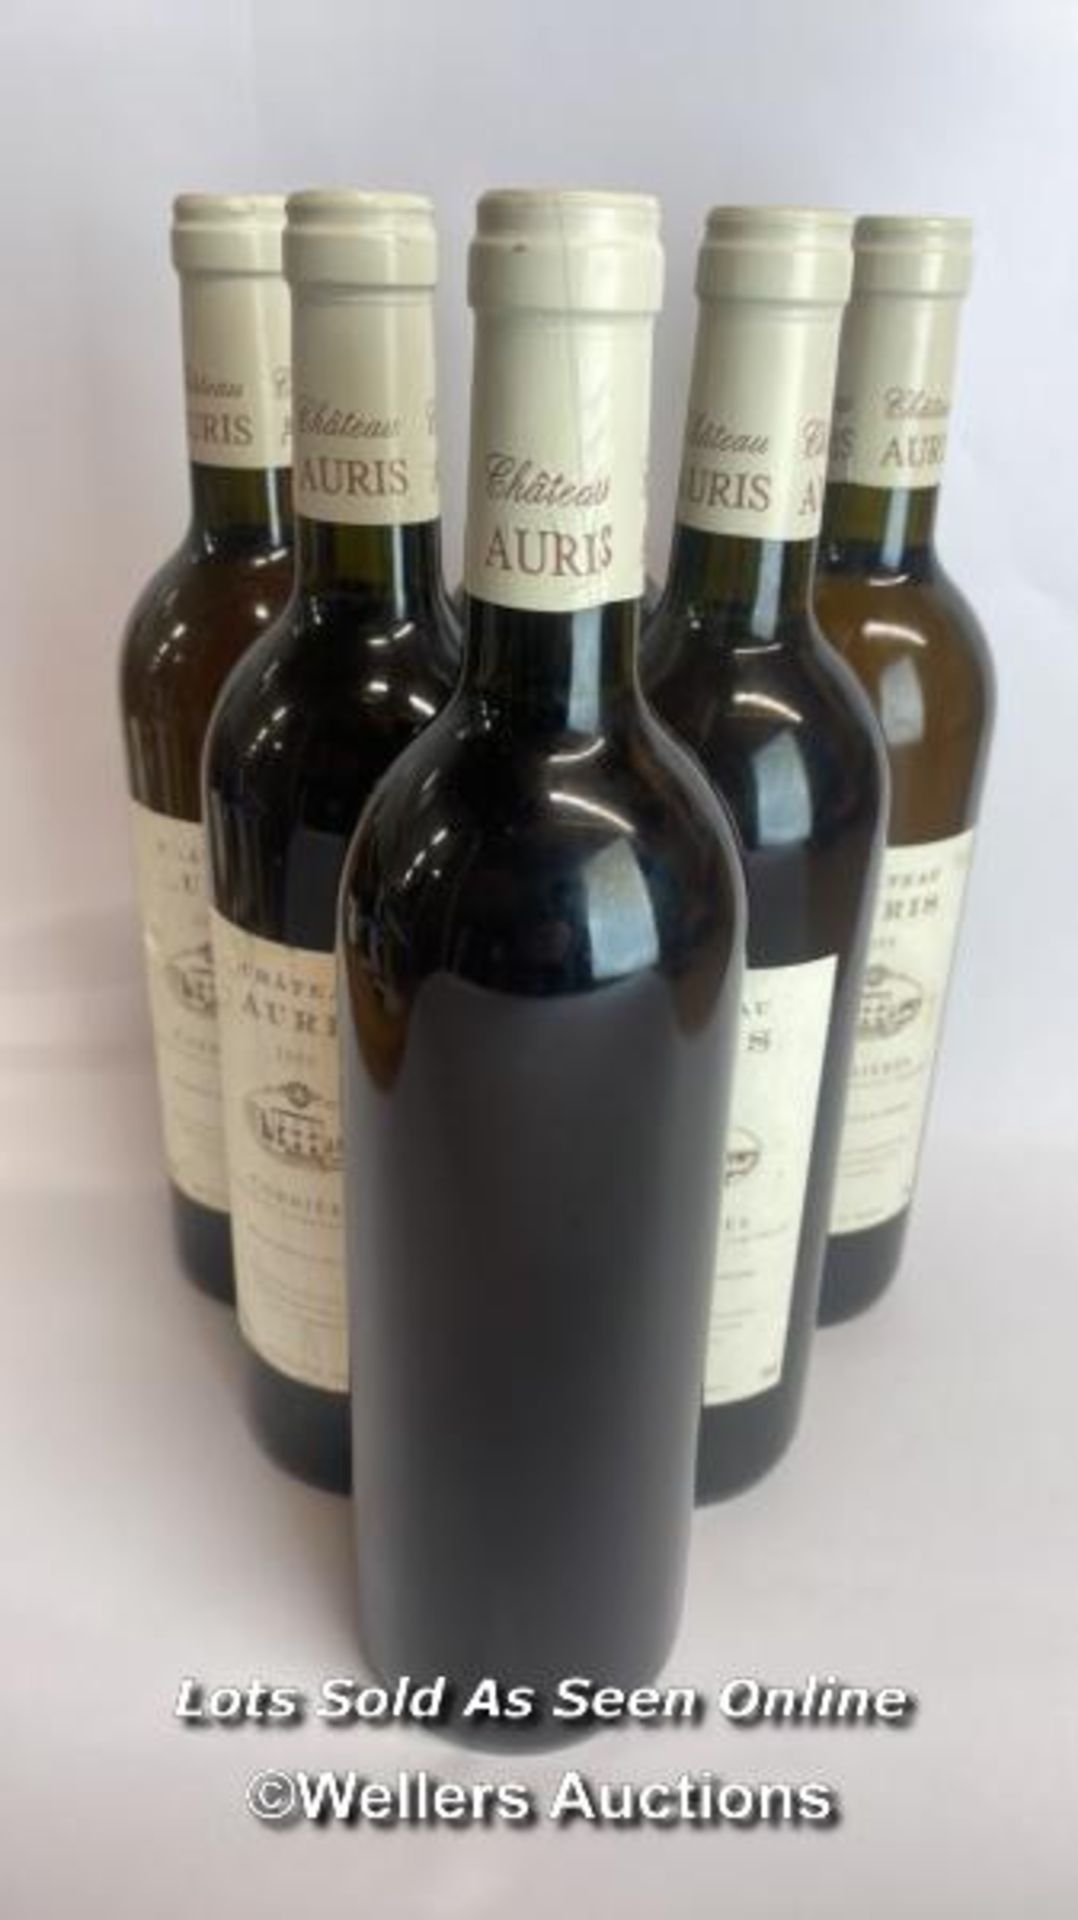 Six bottles of 1999 Chateau Auris Corbieres, Mis En Boutille Au Chateau, 75cl, 12.5% vol / Please - Image 5 of 8